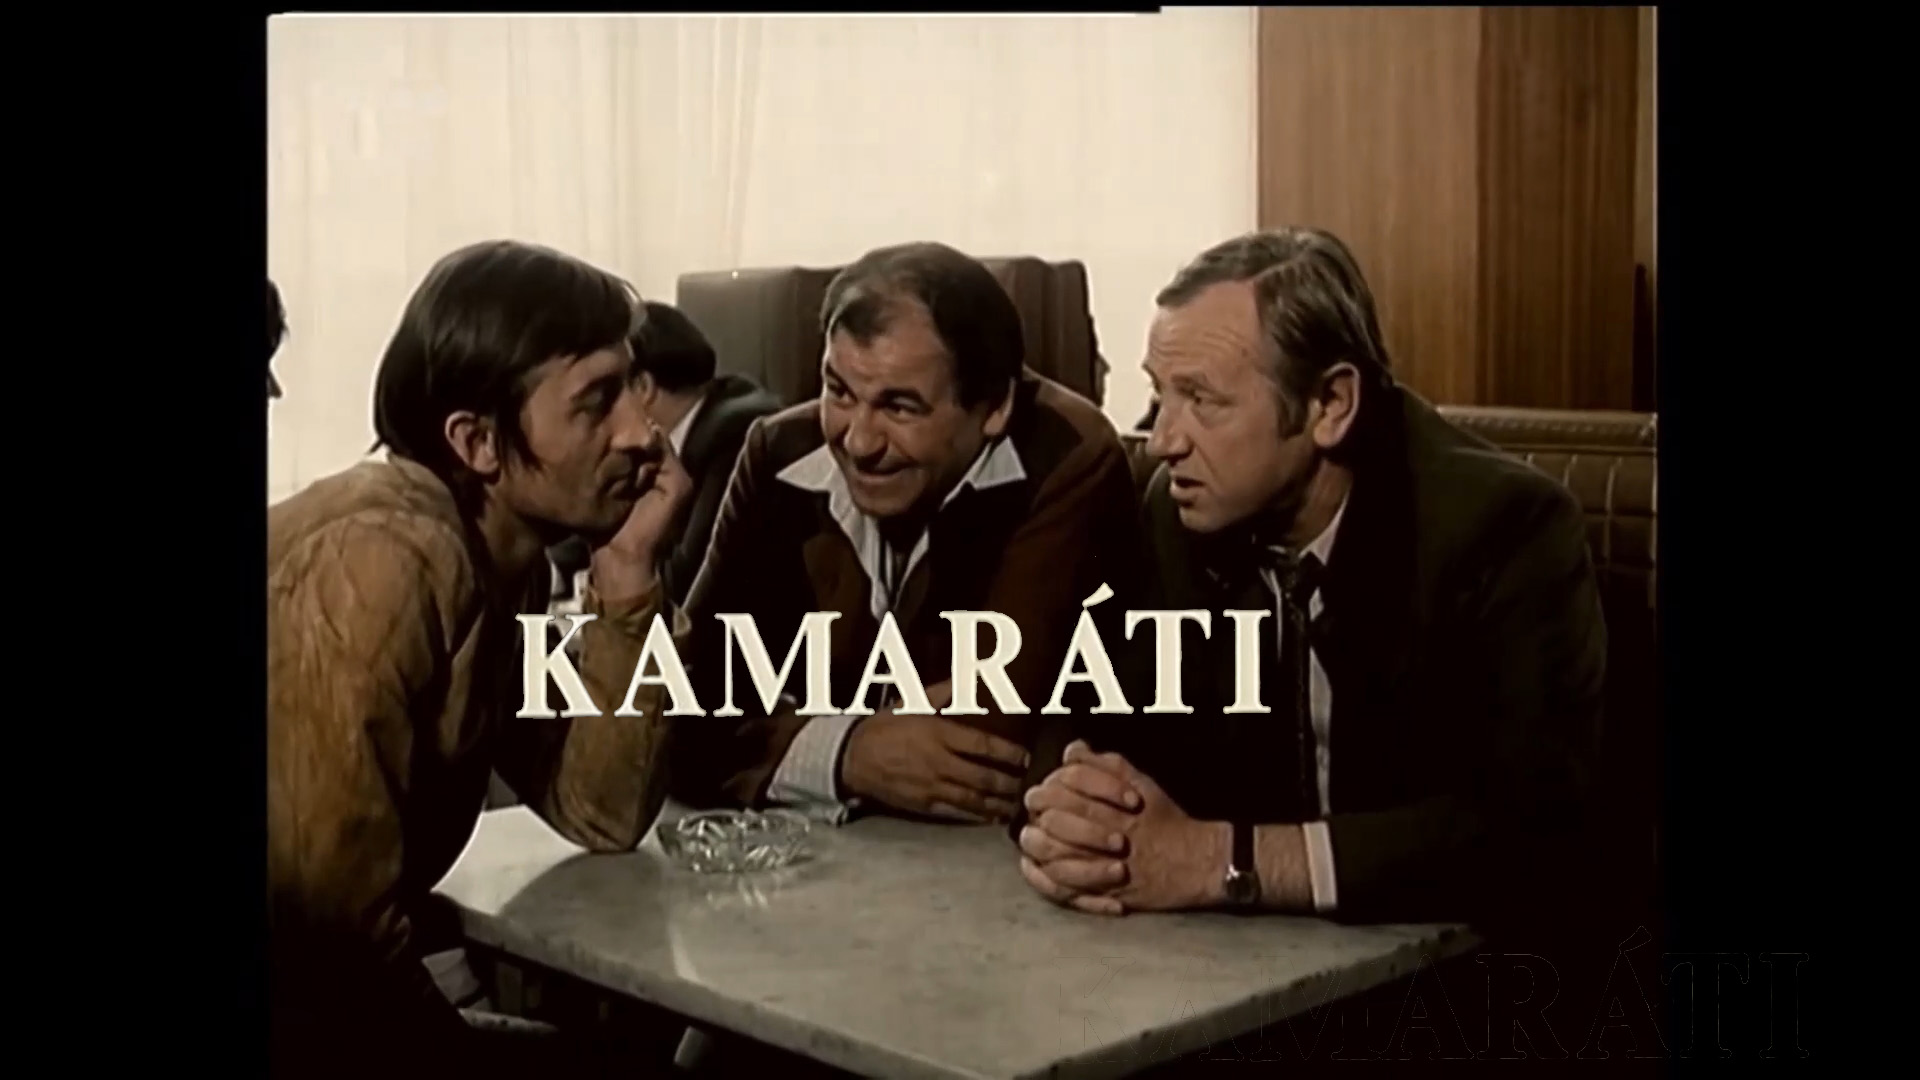 Stiahni si Filmy CZ/SK dabing Kamarati (1973)(SK)[TvRip] = CSFD 73%